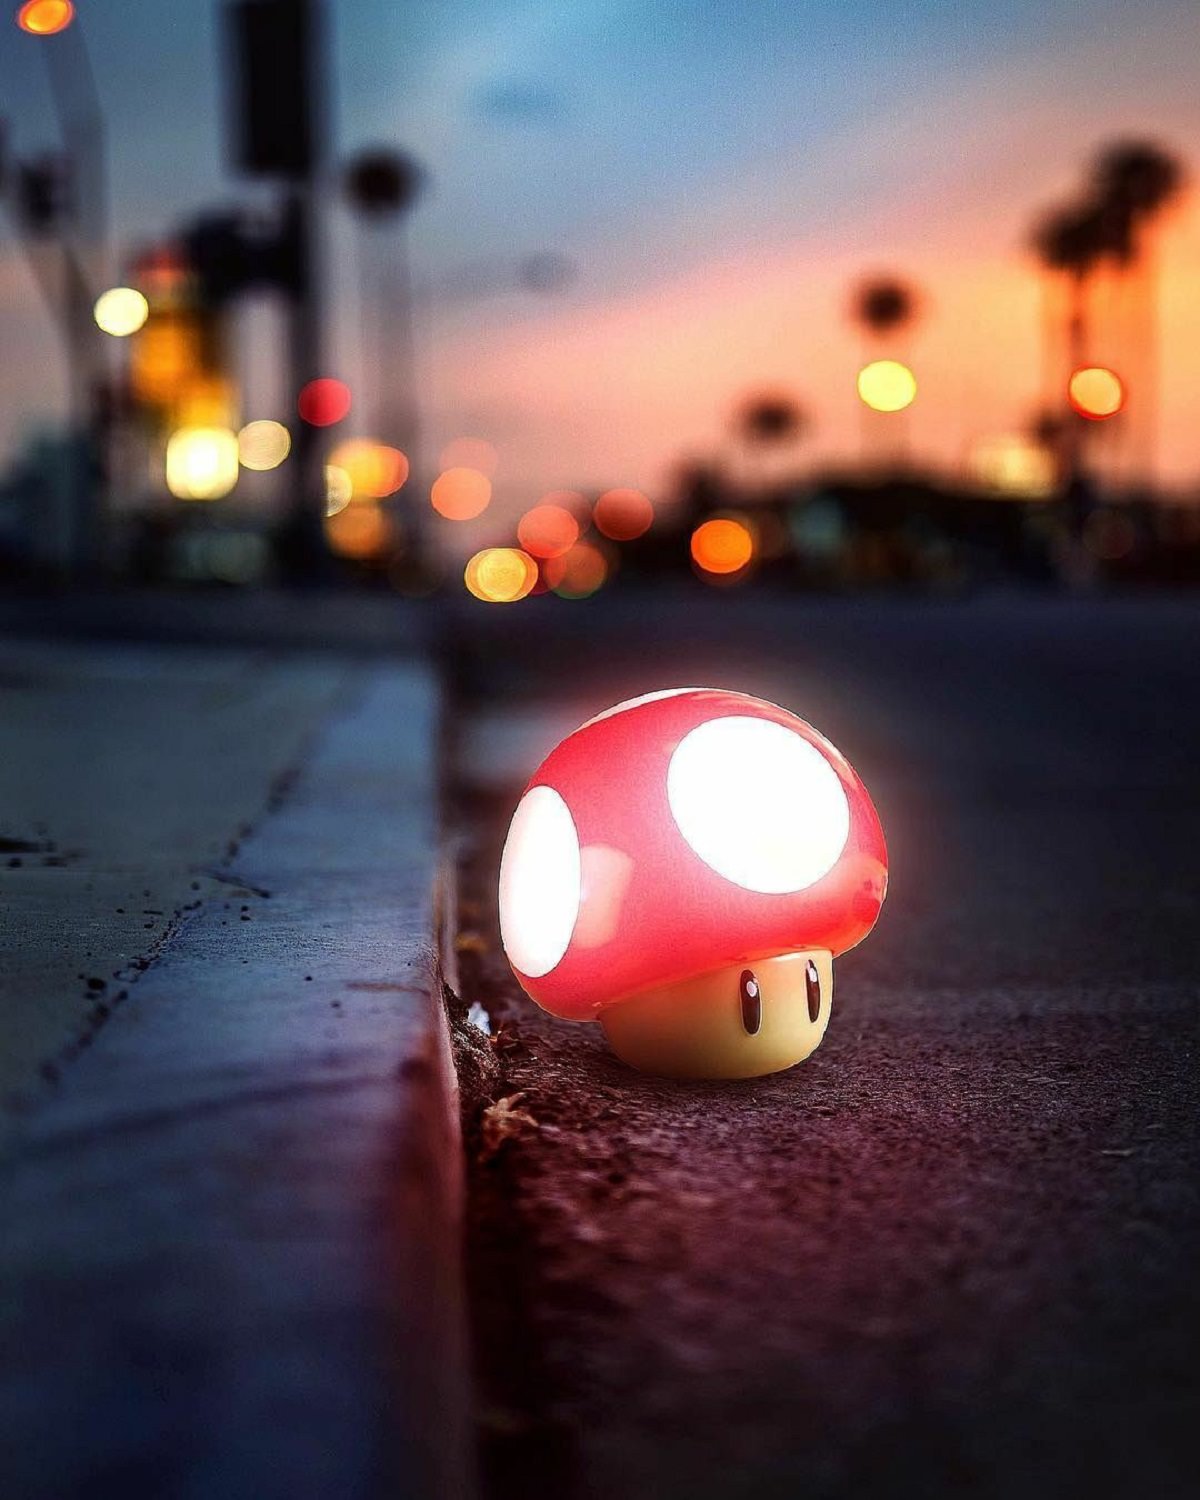 قارچ بازی ماریو به شکل واقعگرایانه و سه بعدی در خیابان